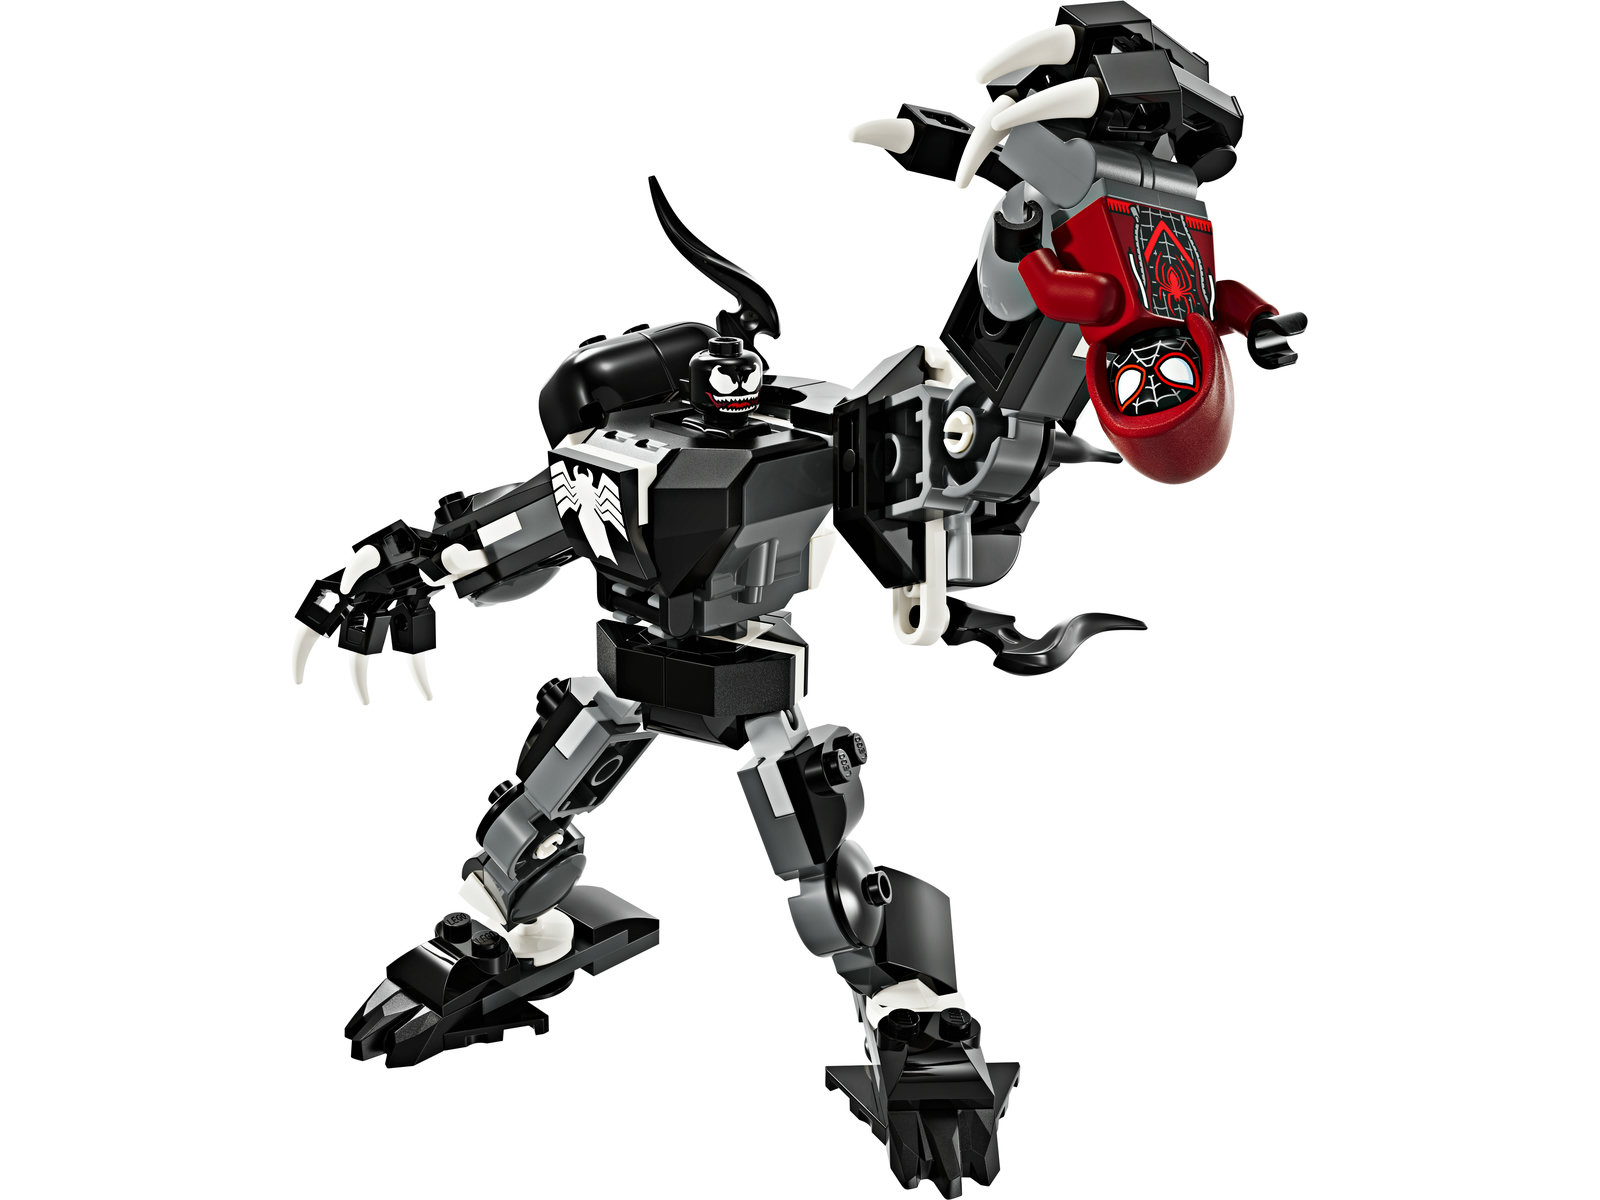 LEGO® Marvel 76276 - Venom Mech vs. Miles Morales